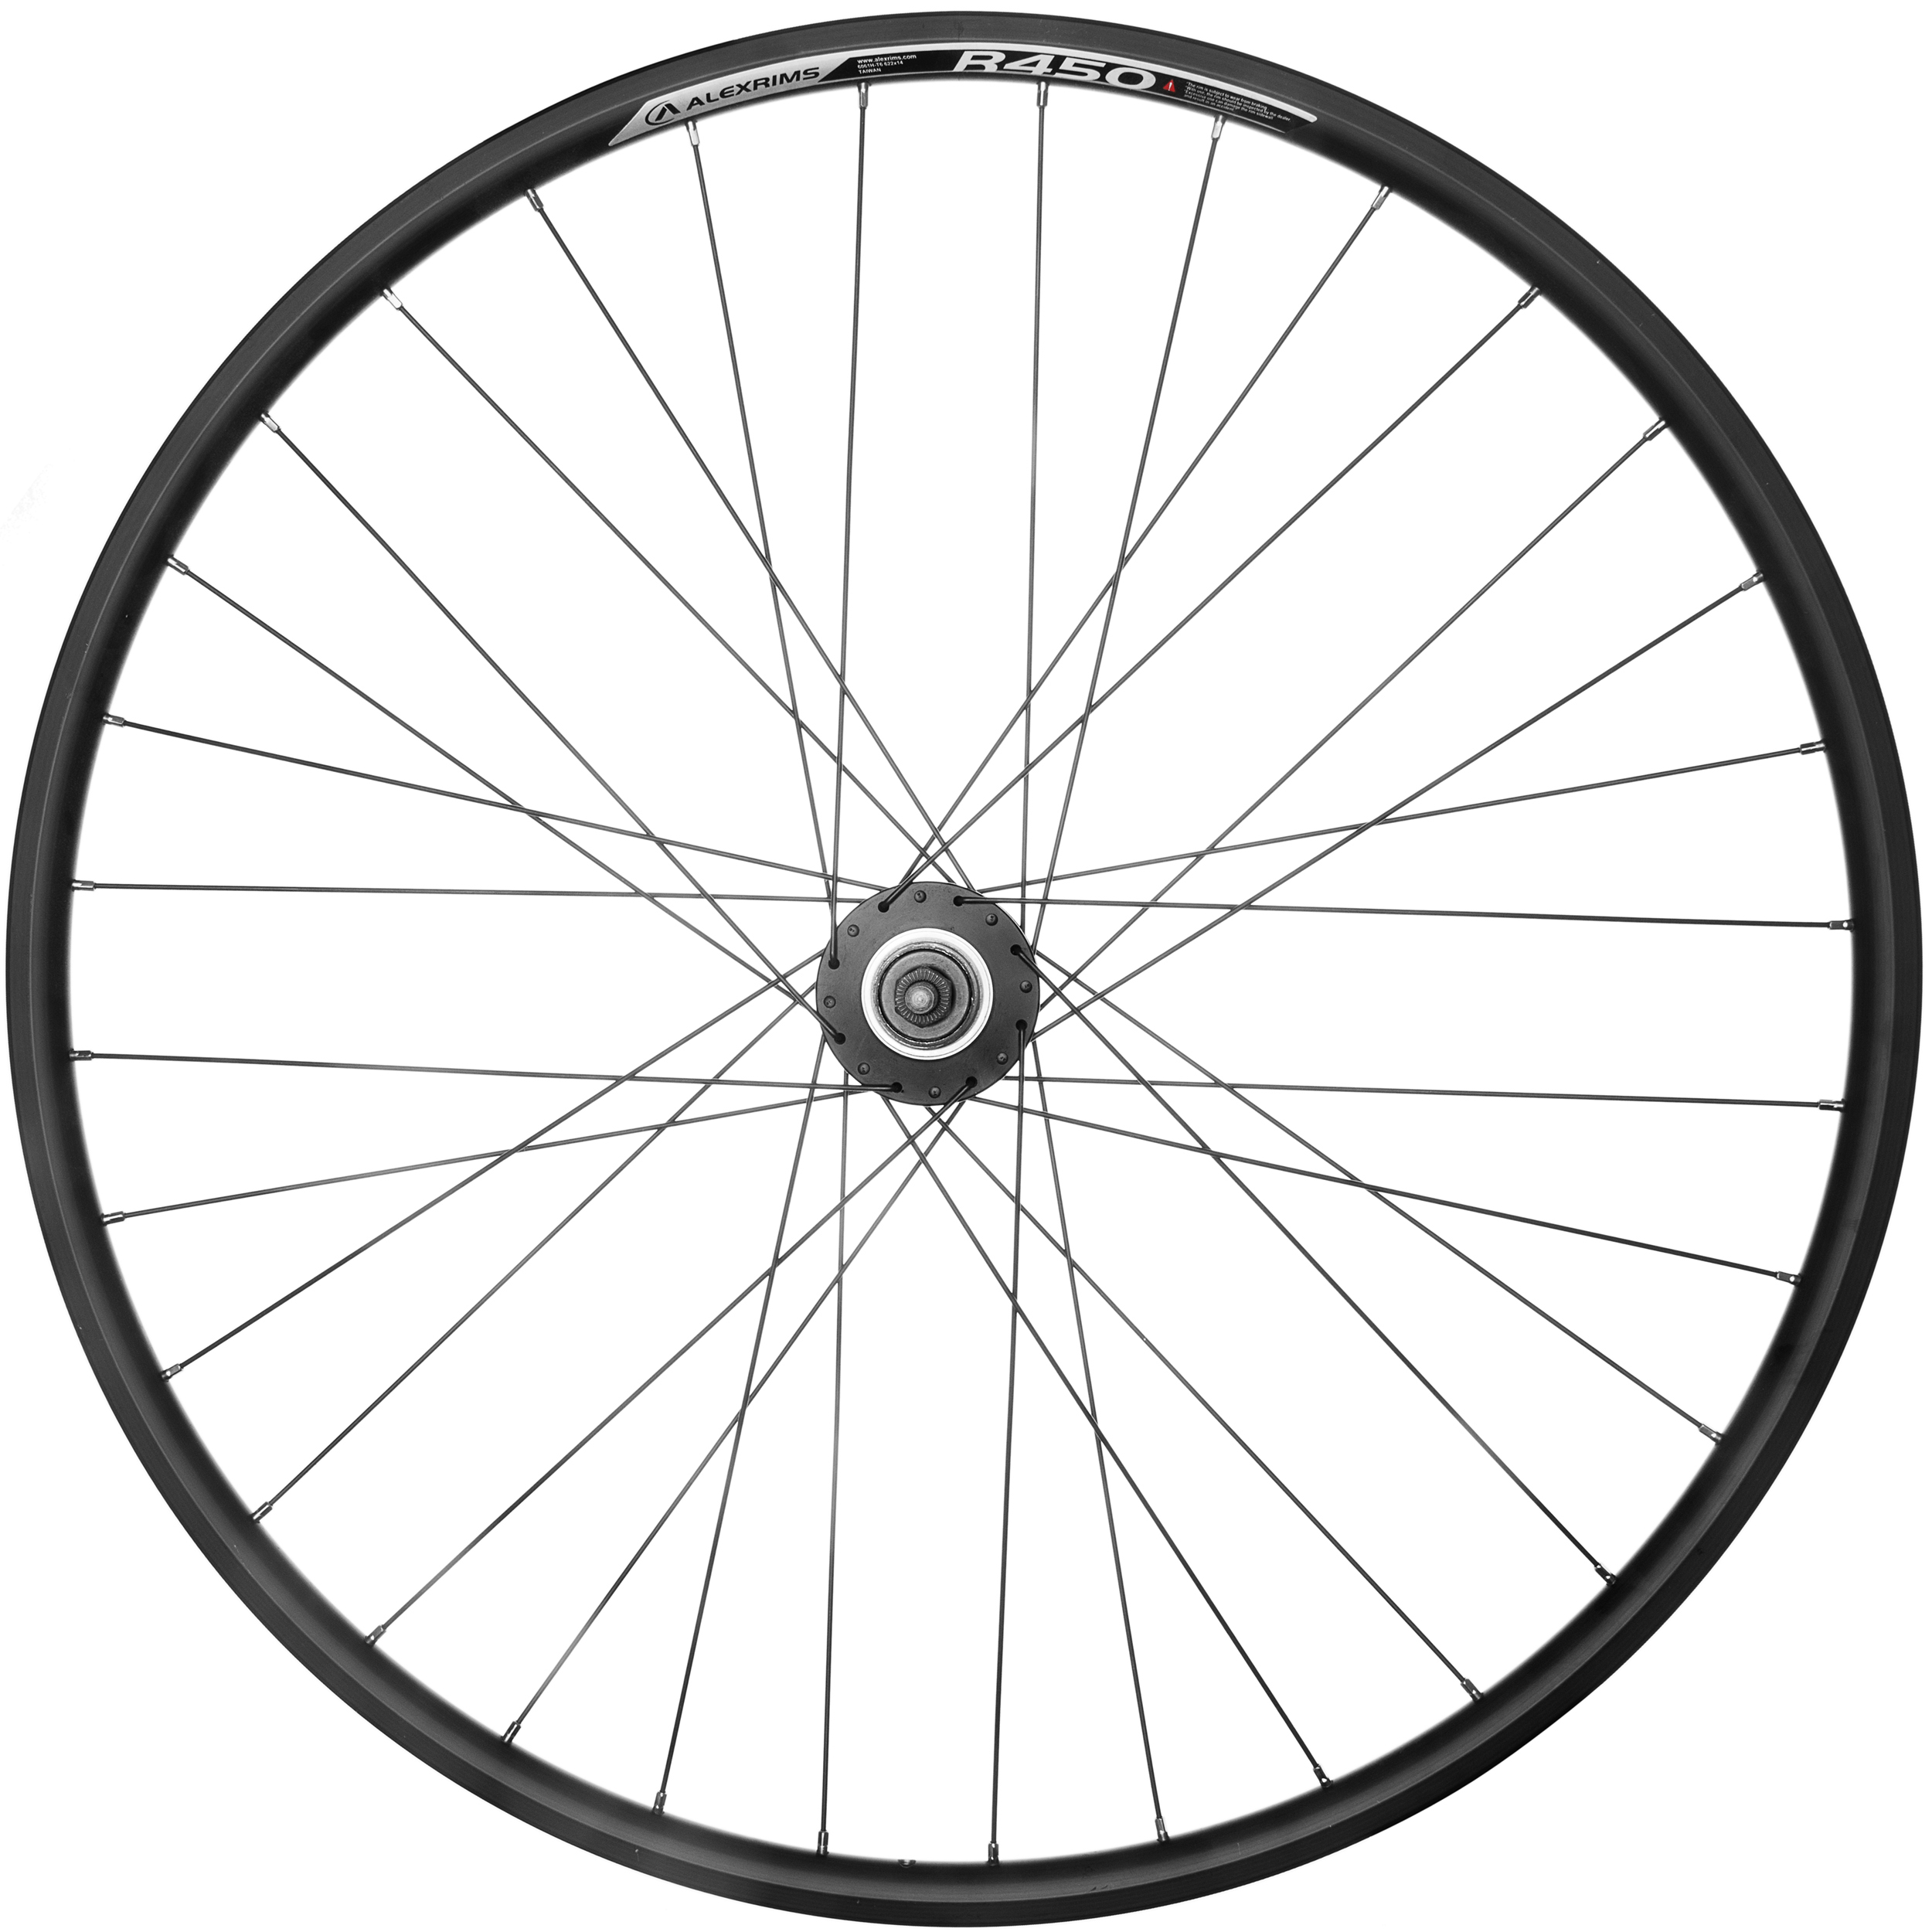 Alex R450 700C 32H 14T Rear Wheel